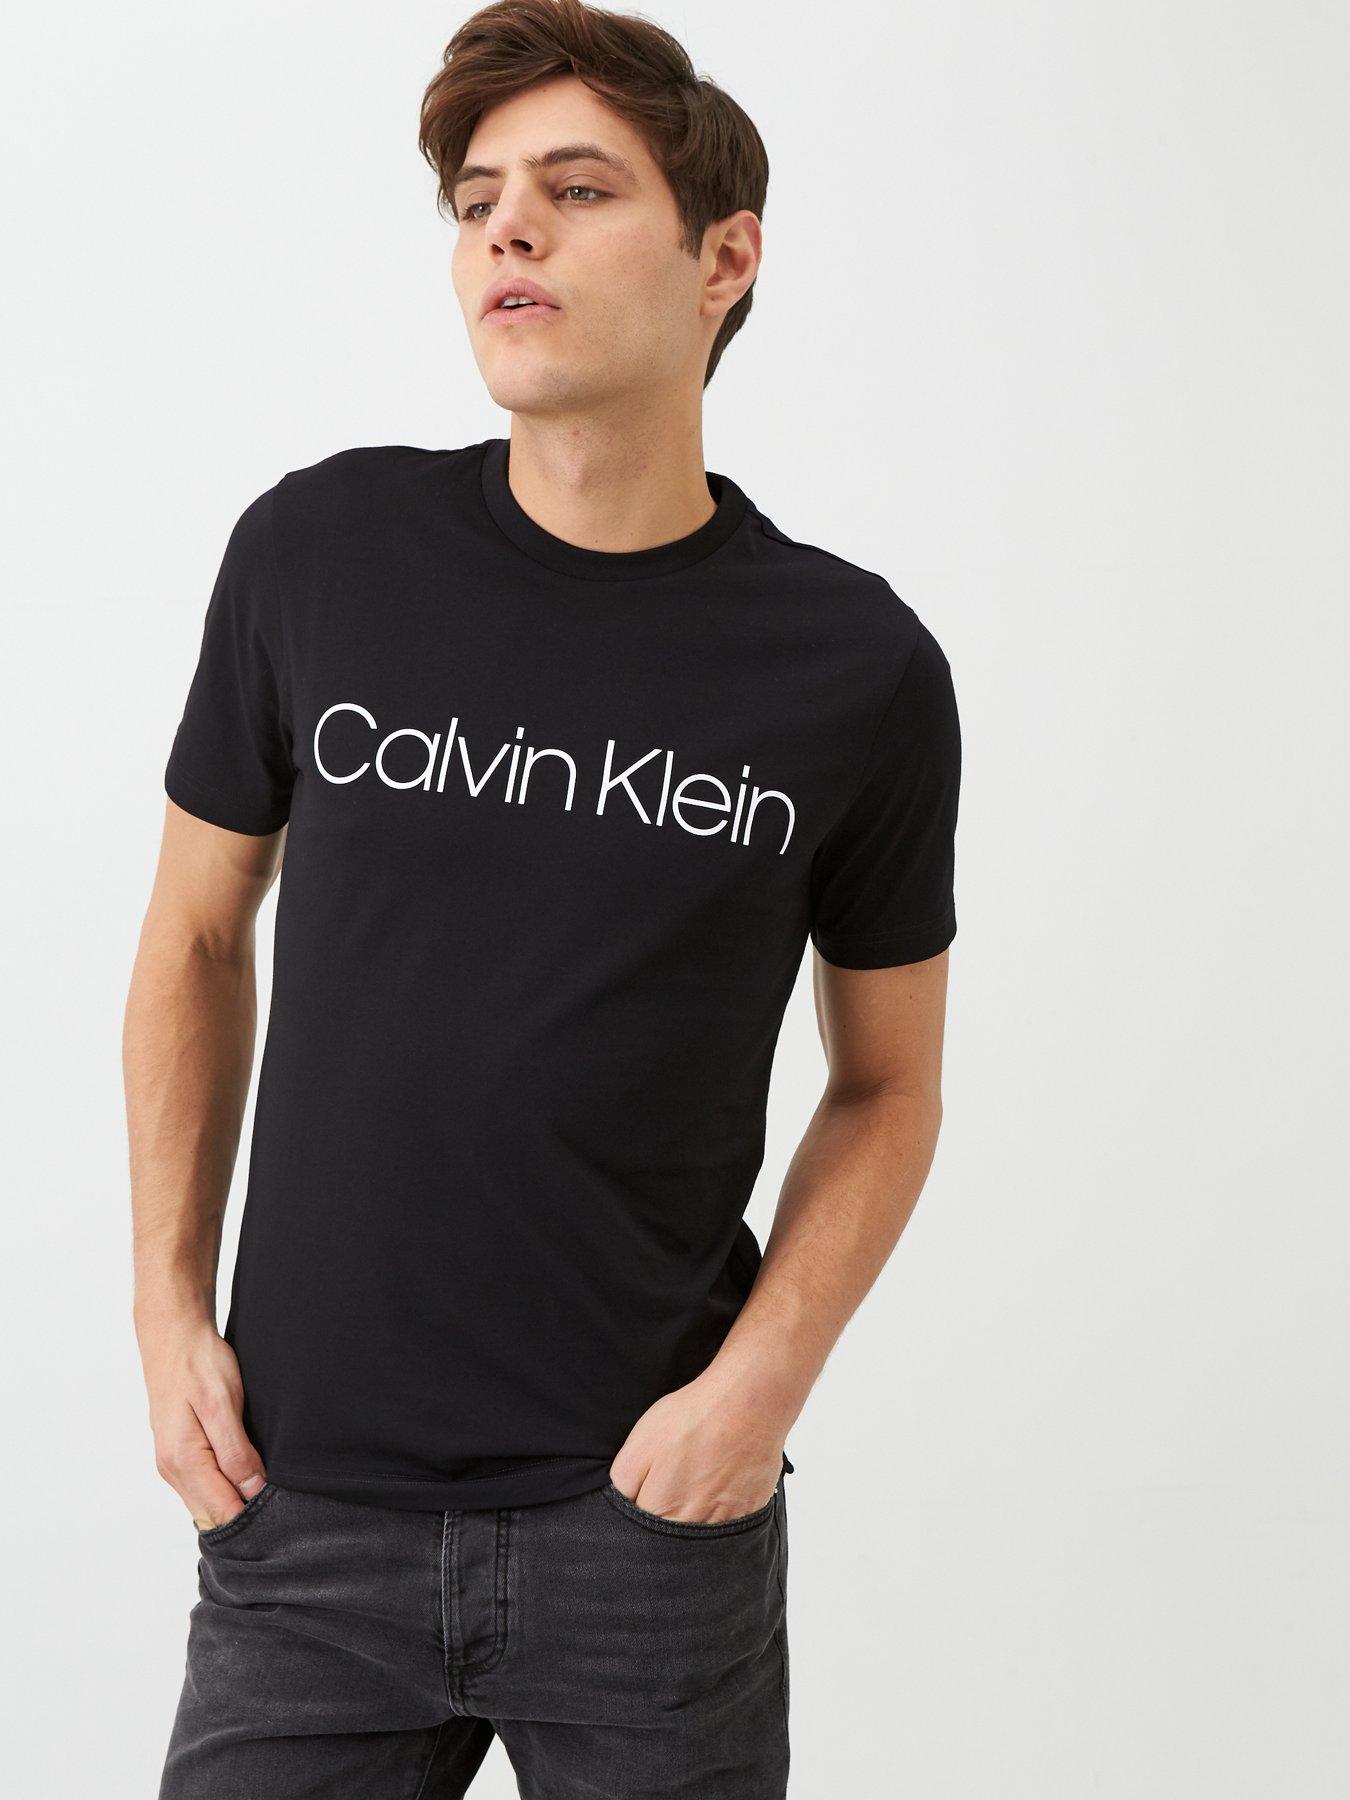 T-Shirts CALVIN KLEIN 3 L schwarz Herren Kleidung Calvin Klein Herren T-Shirts & Polos Calvin Klein Herren T-Shirts Calvin Klein Herren T-Shirts Calvin Klein Herren 